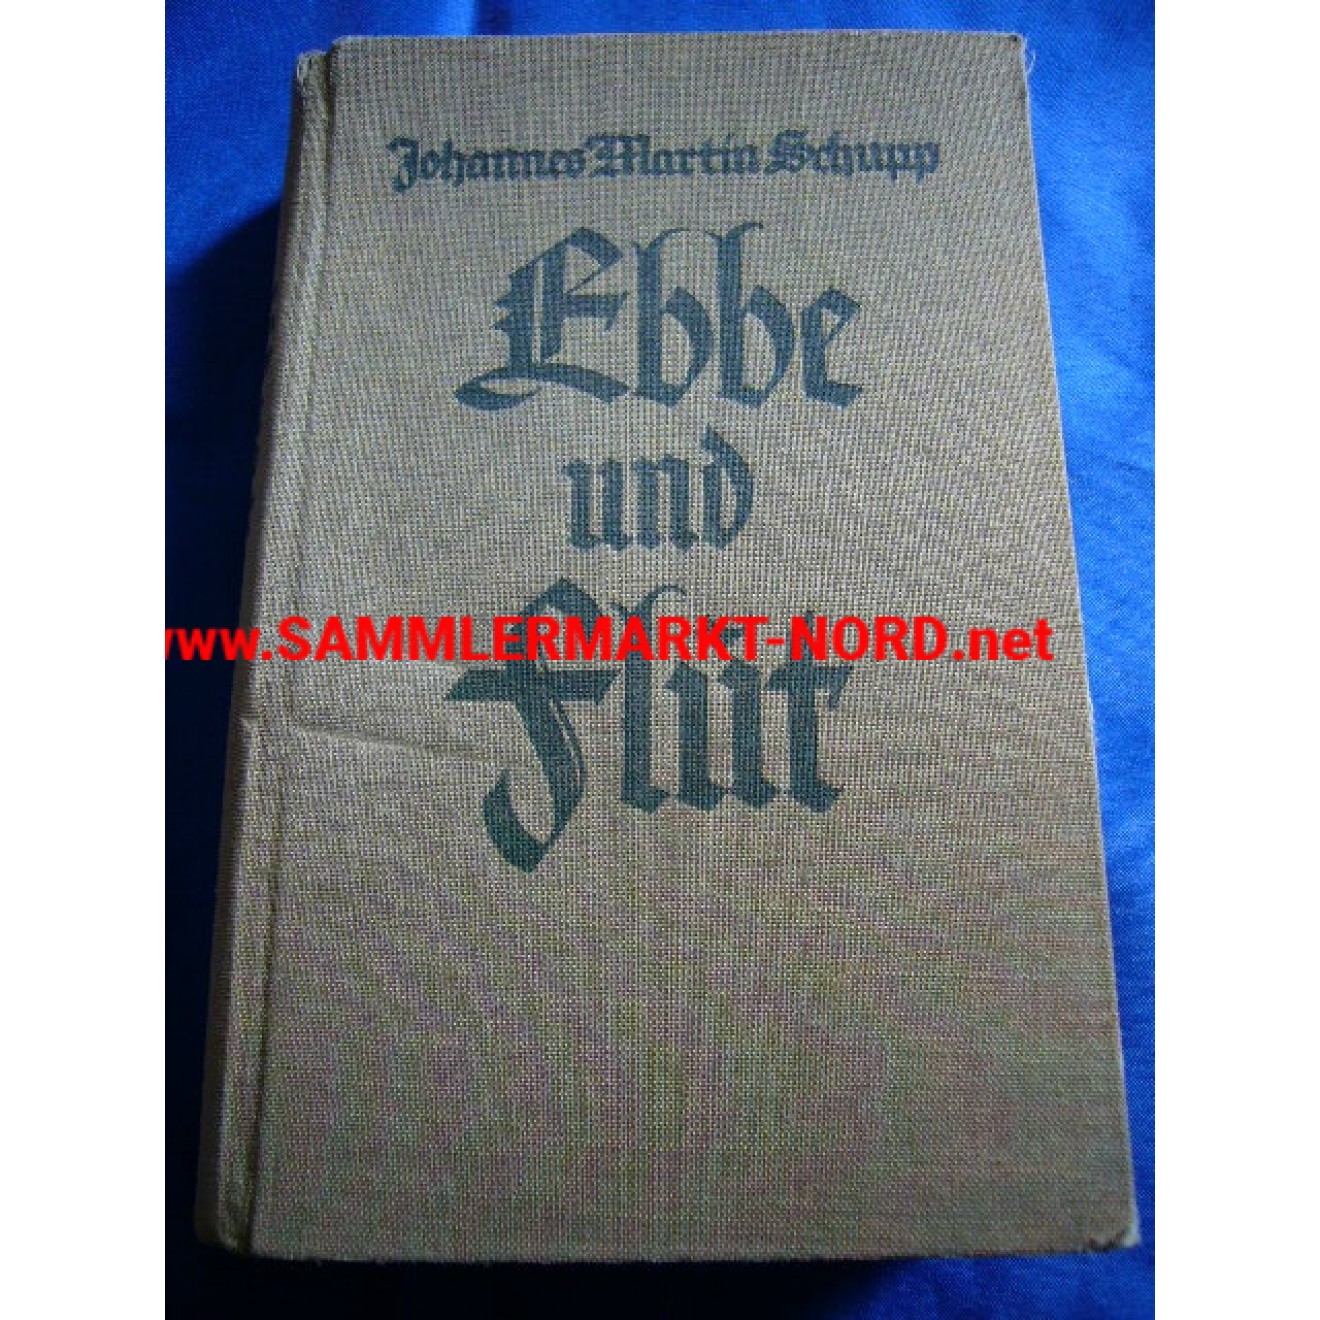 Ebbe und Flut - Ein hansischer Roman deutscher Zeitwende